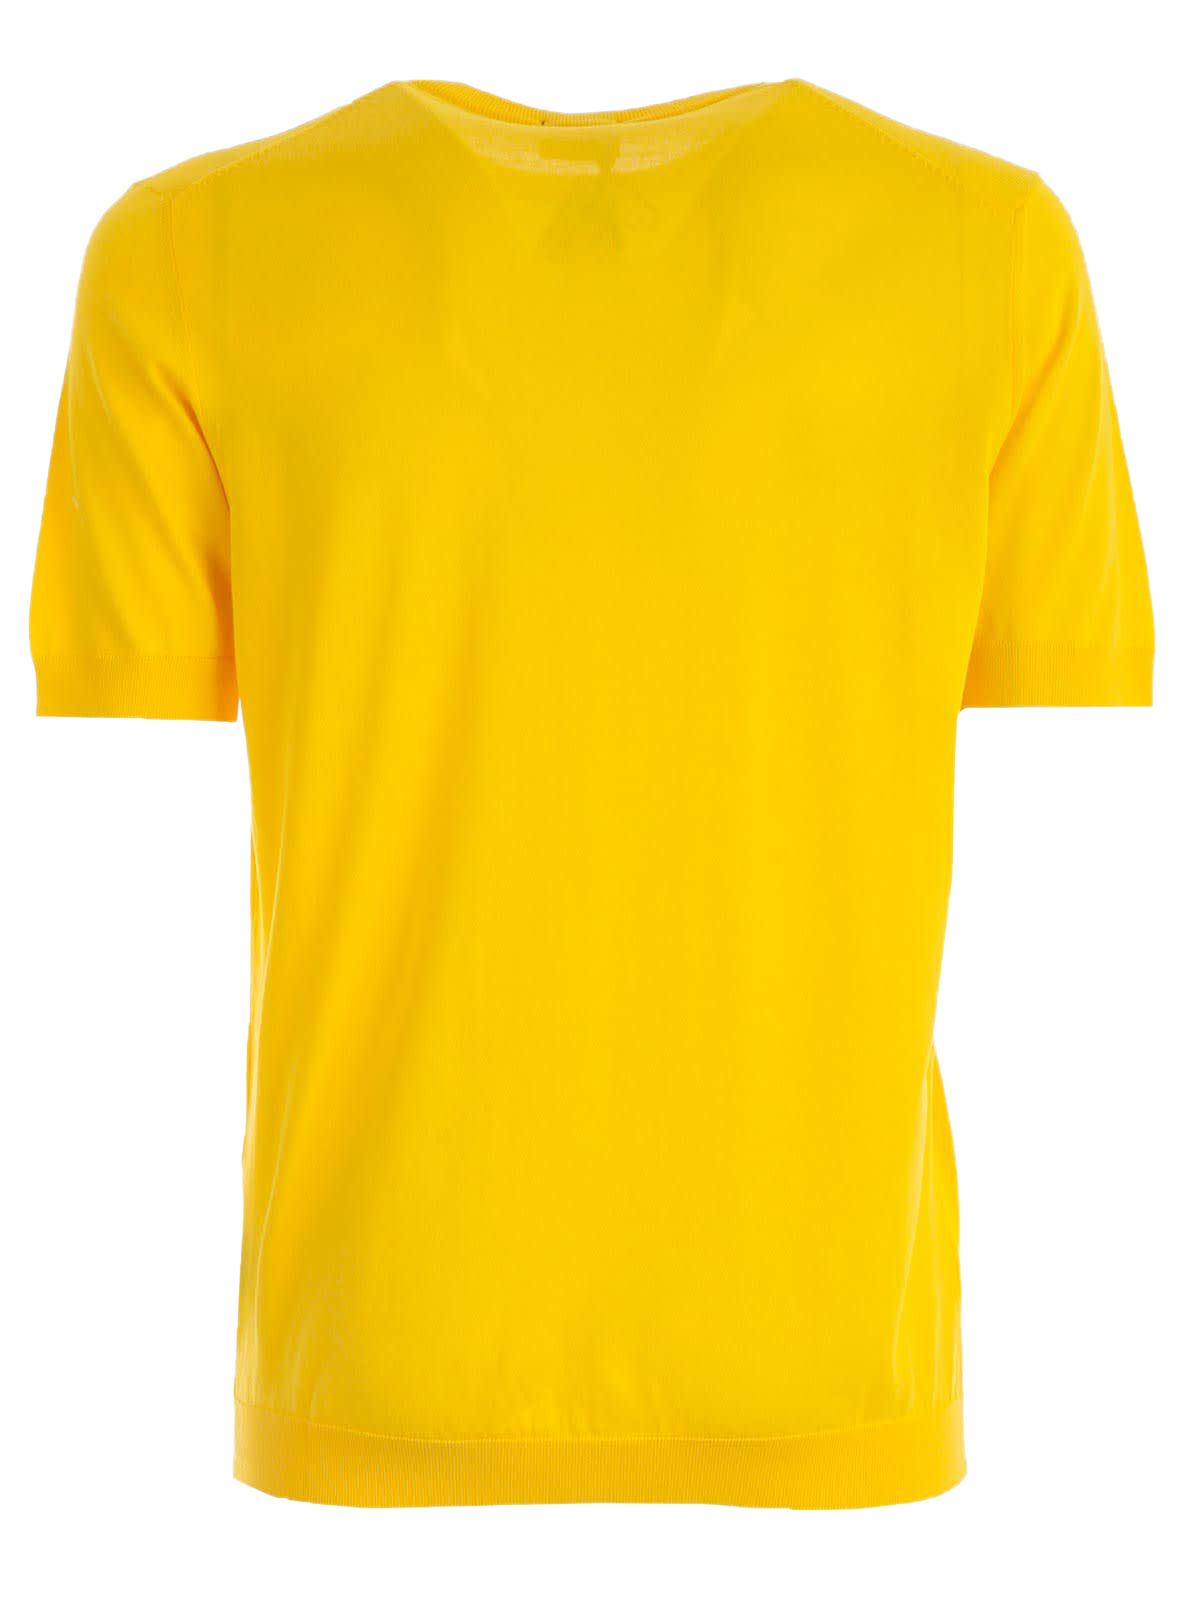 Einfaches gelbes T-shirt Transparentes Bild